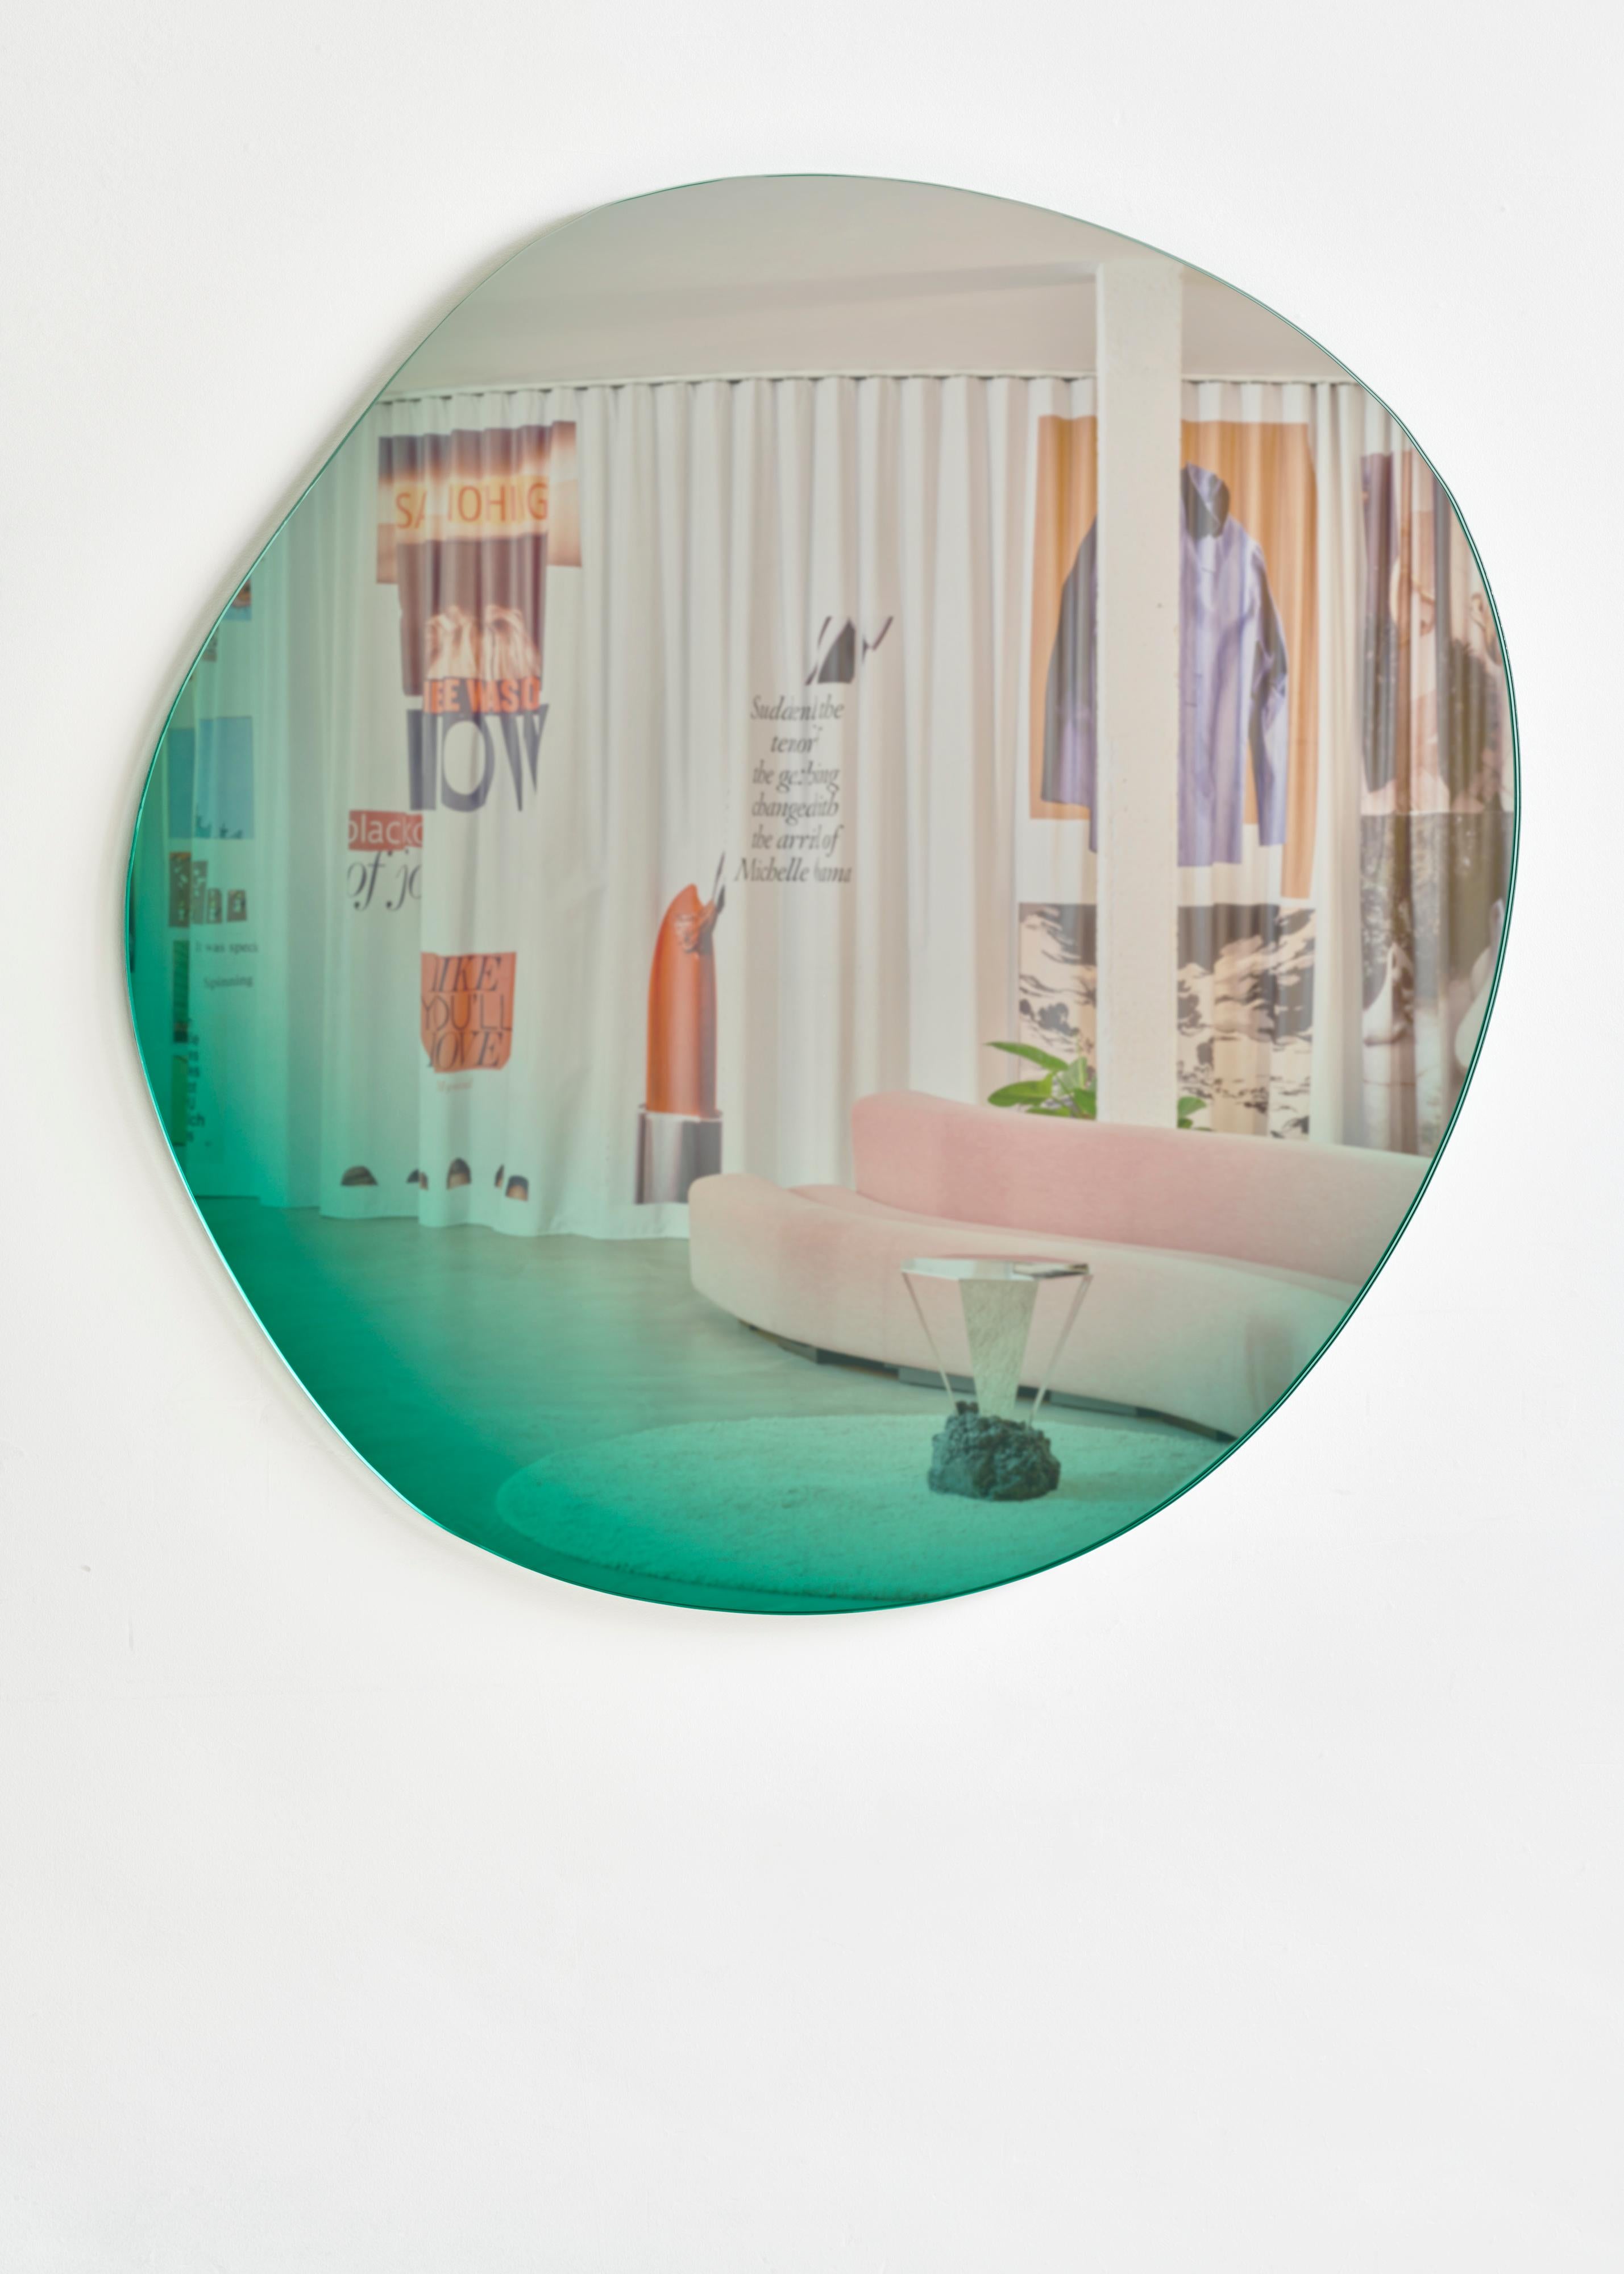 Dernier design de la série de miroirs Off Round Hue

Sabine Marcelis et Brit van Nerven ont collaboré au projet 